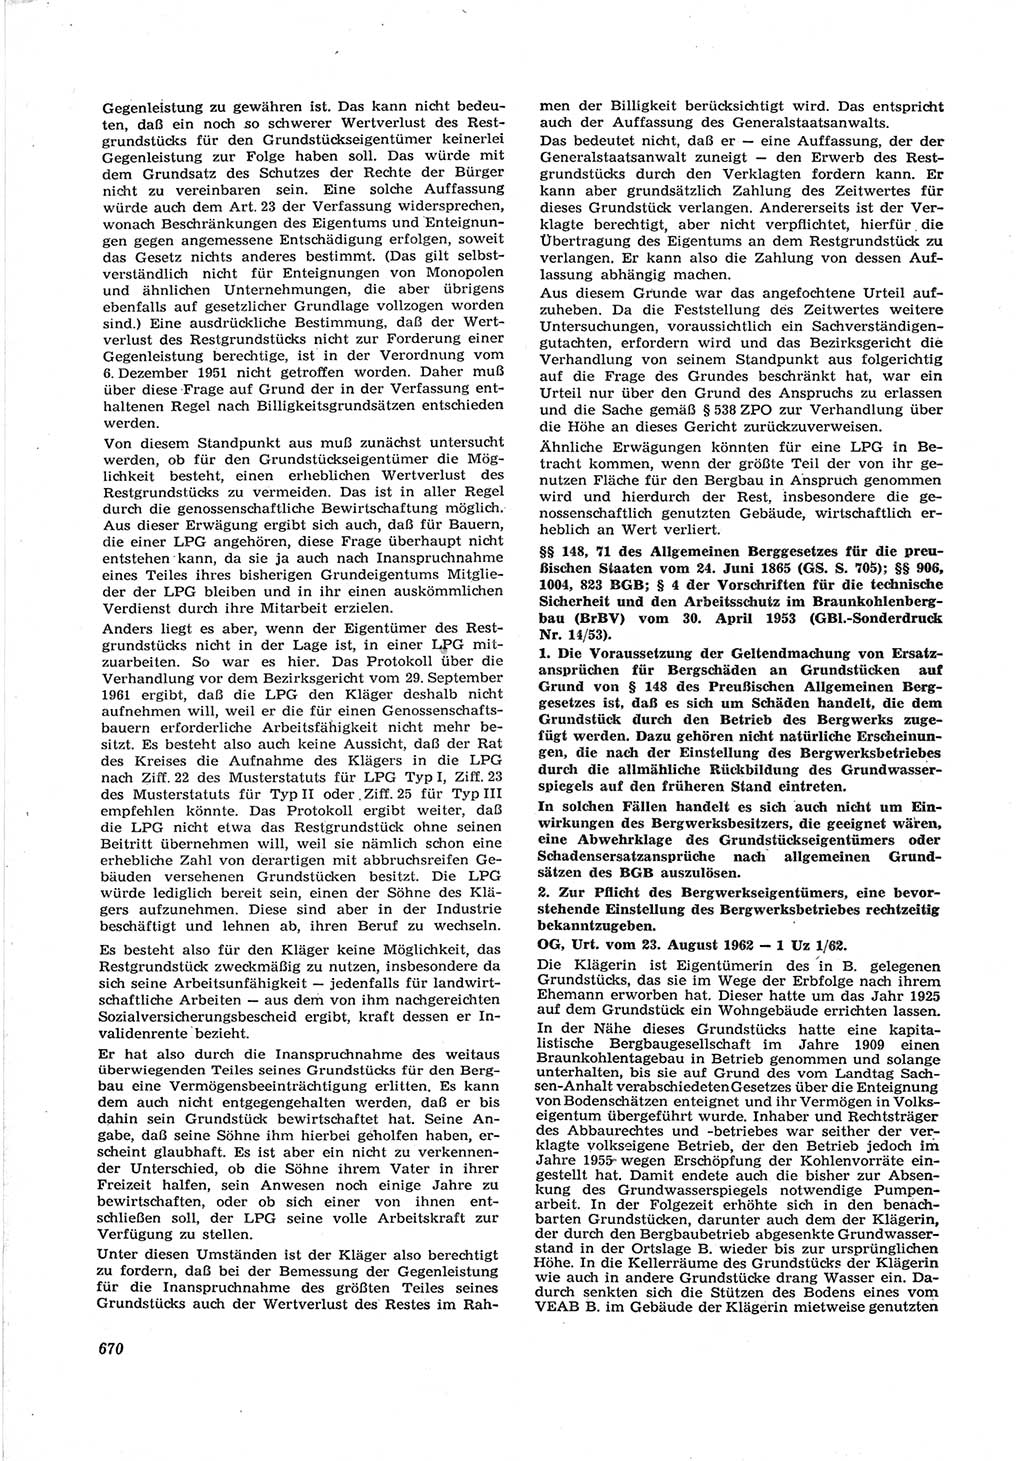 Neue Justiz (NJ), Zeitschrift für Recht und Rechtswissenschaft [Deutsche Demokratische Republik (DDR)], 17. Jahrgang 1963, Seite 670 (NJ DDR 1963, S. 670)